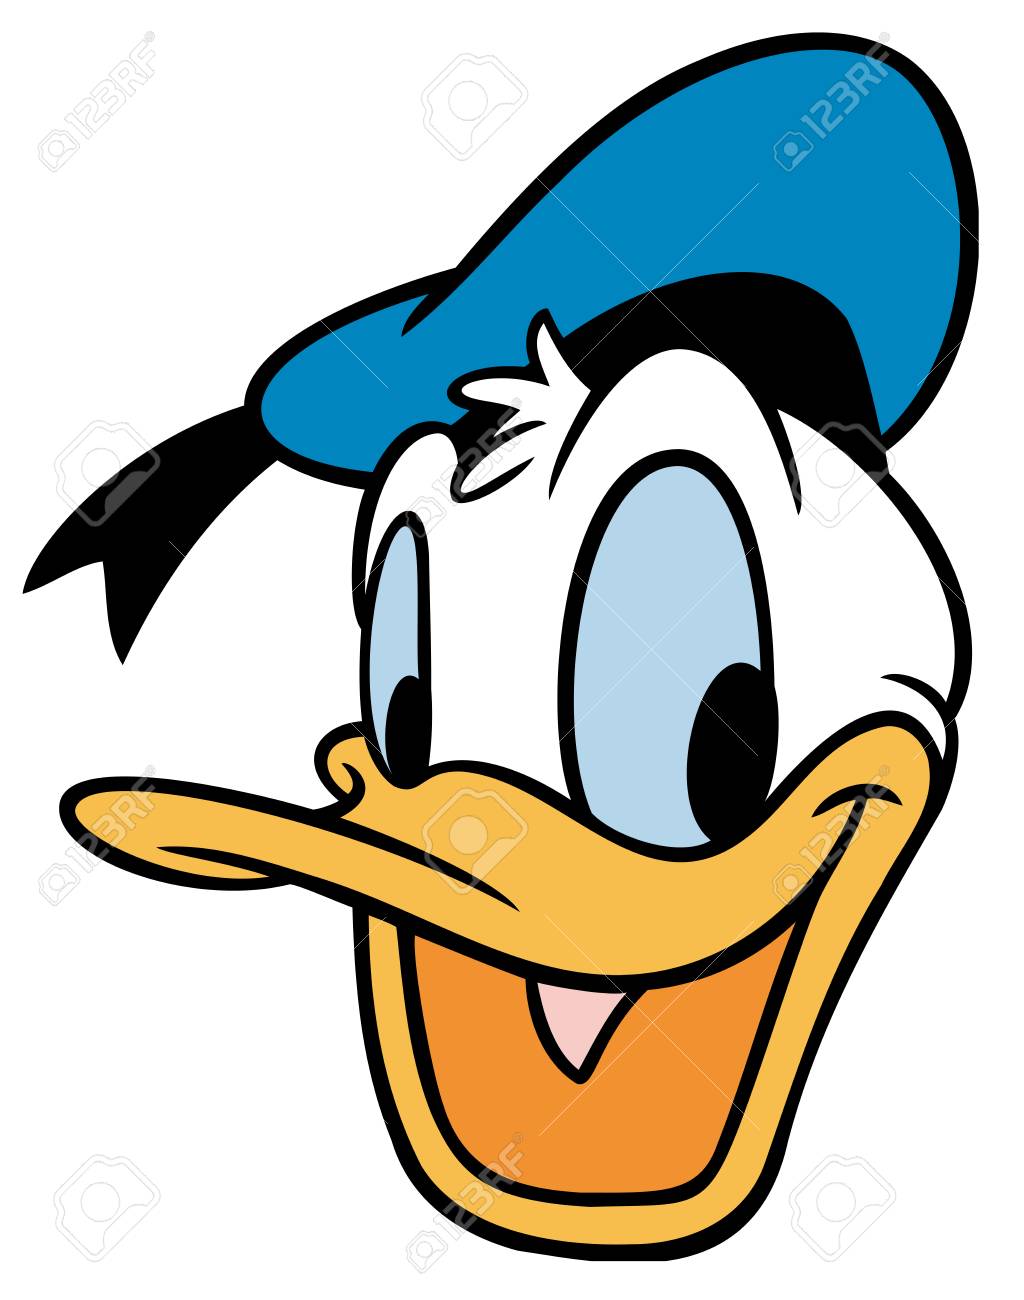 Donald duck illustration cartoon head cheered up | kay scorah.